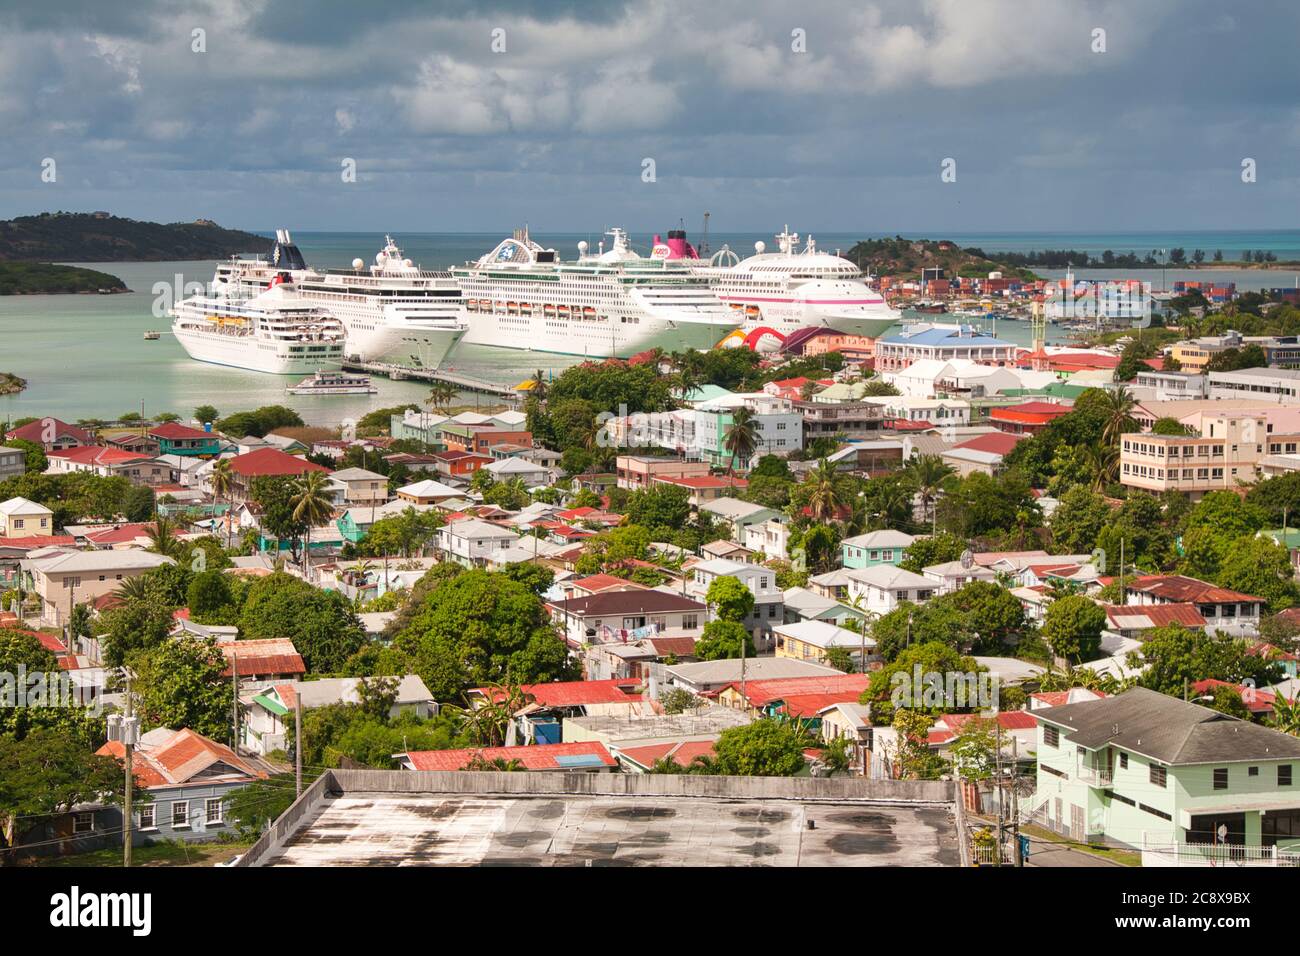 Kreuzfahrtschiffe Reihen sich im Hafen an und scheinen die Gebäude in St. Johns, Antigua Island in der Karibik, in den Schatten zu stellen Stockfoto